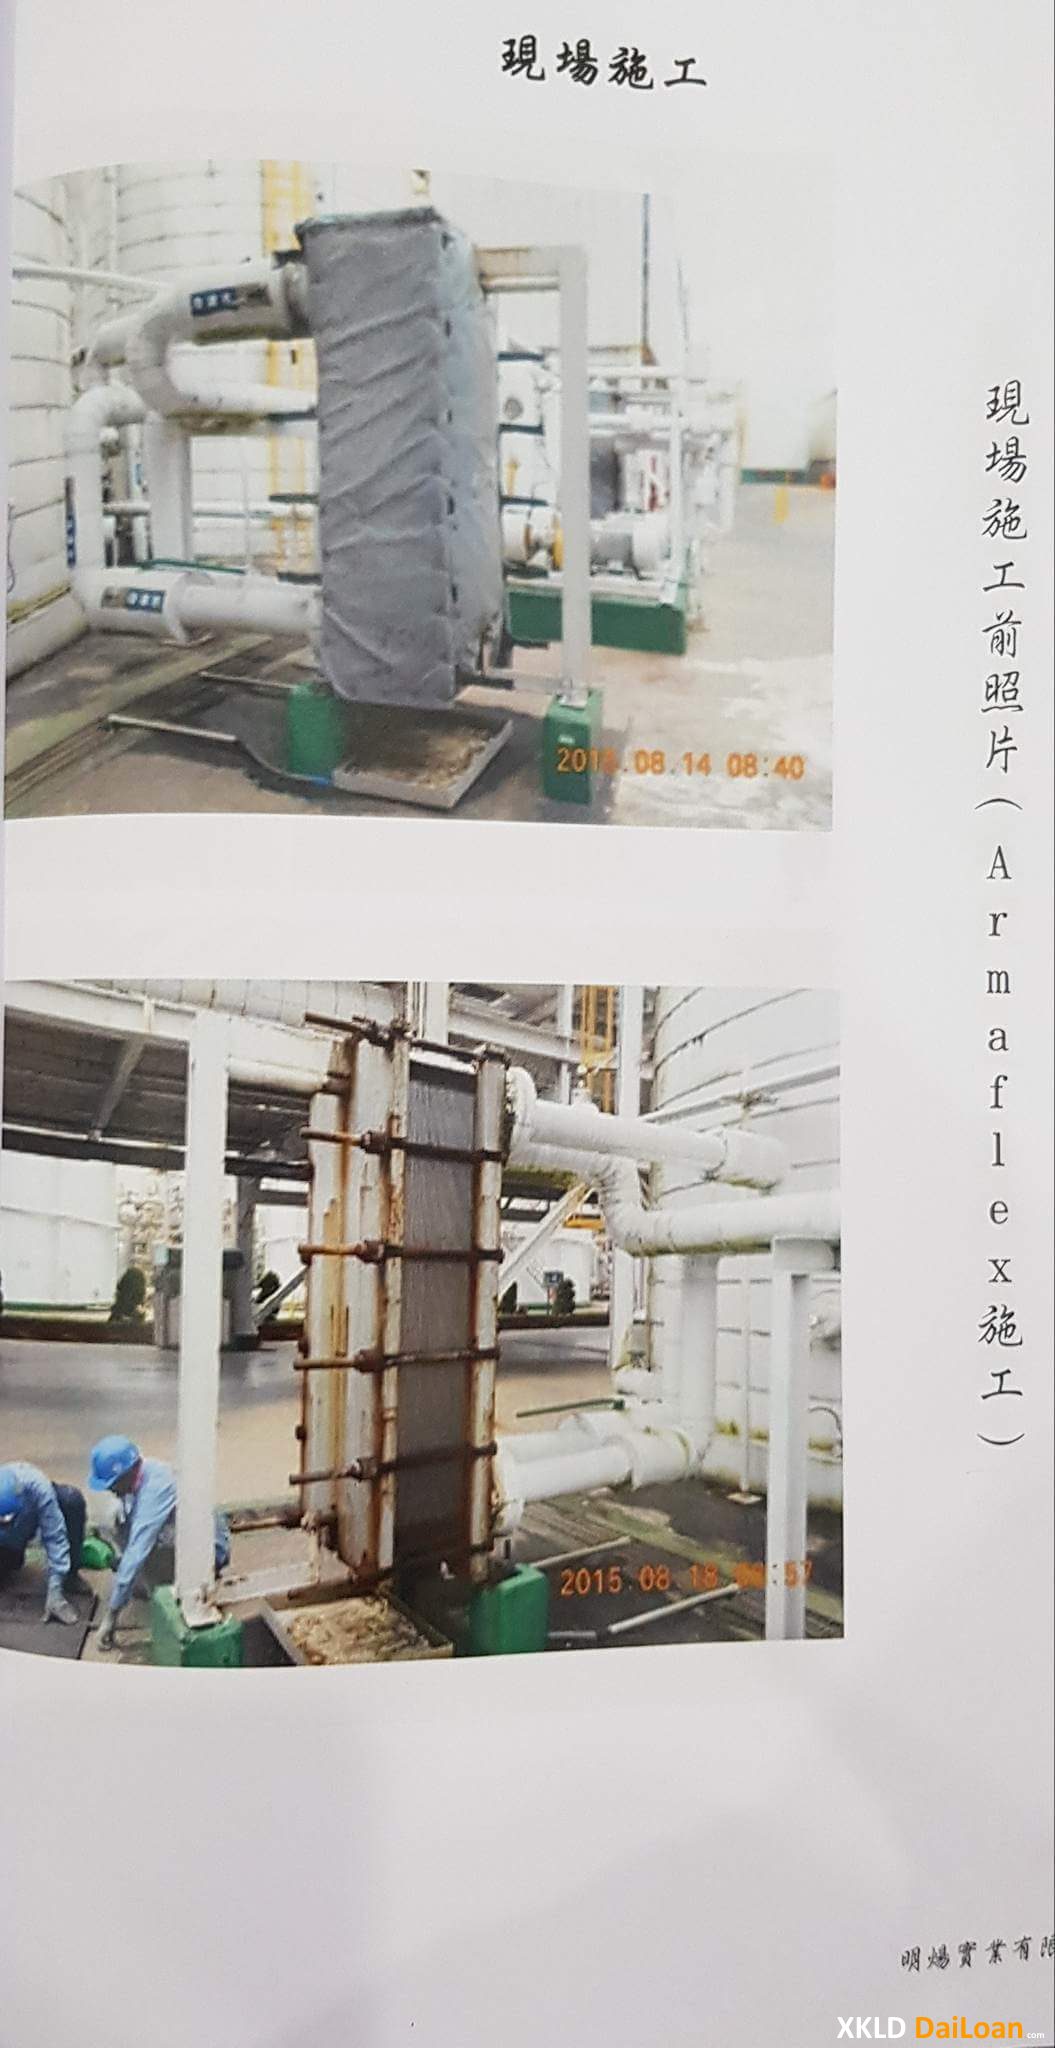 Tuyển 03 Nam làm mài in đóng gói cuộn kính | Chương Hóa | Đài Loan